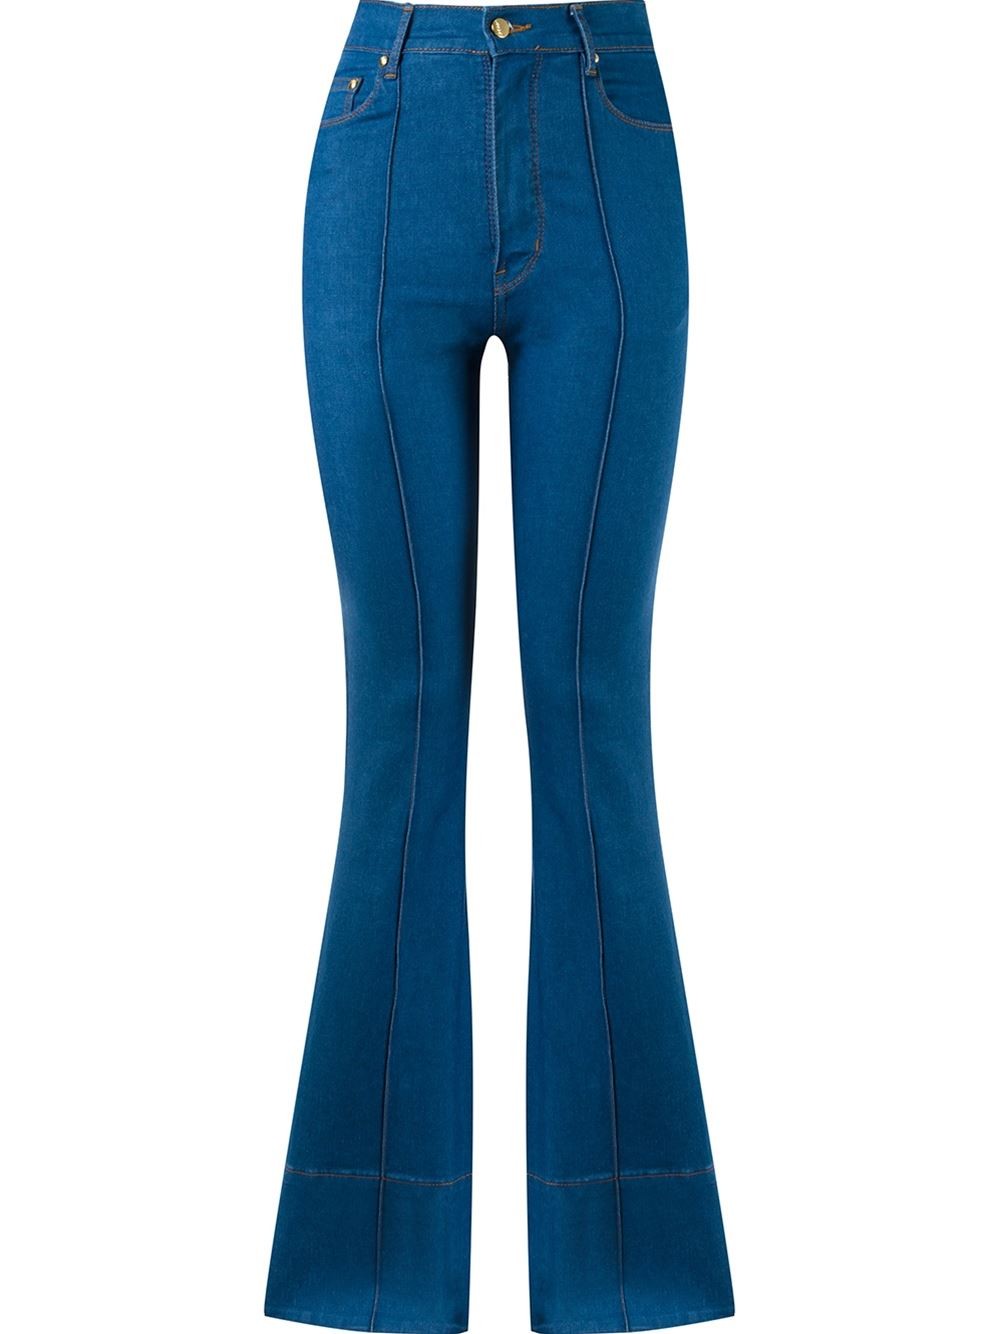 Calça jeans boca de sino, da Amapô. De R$ 532 por 490 (Foto: Divulgação)